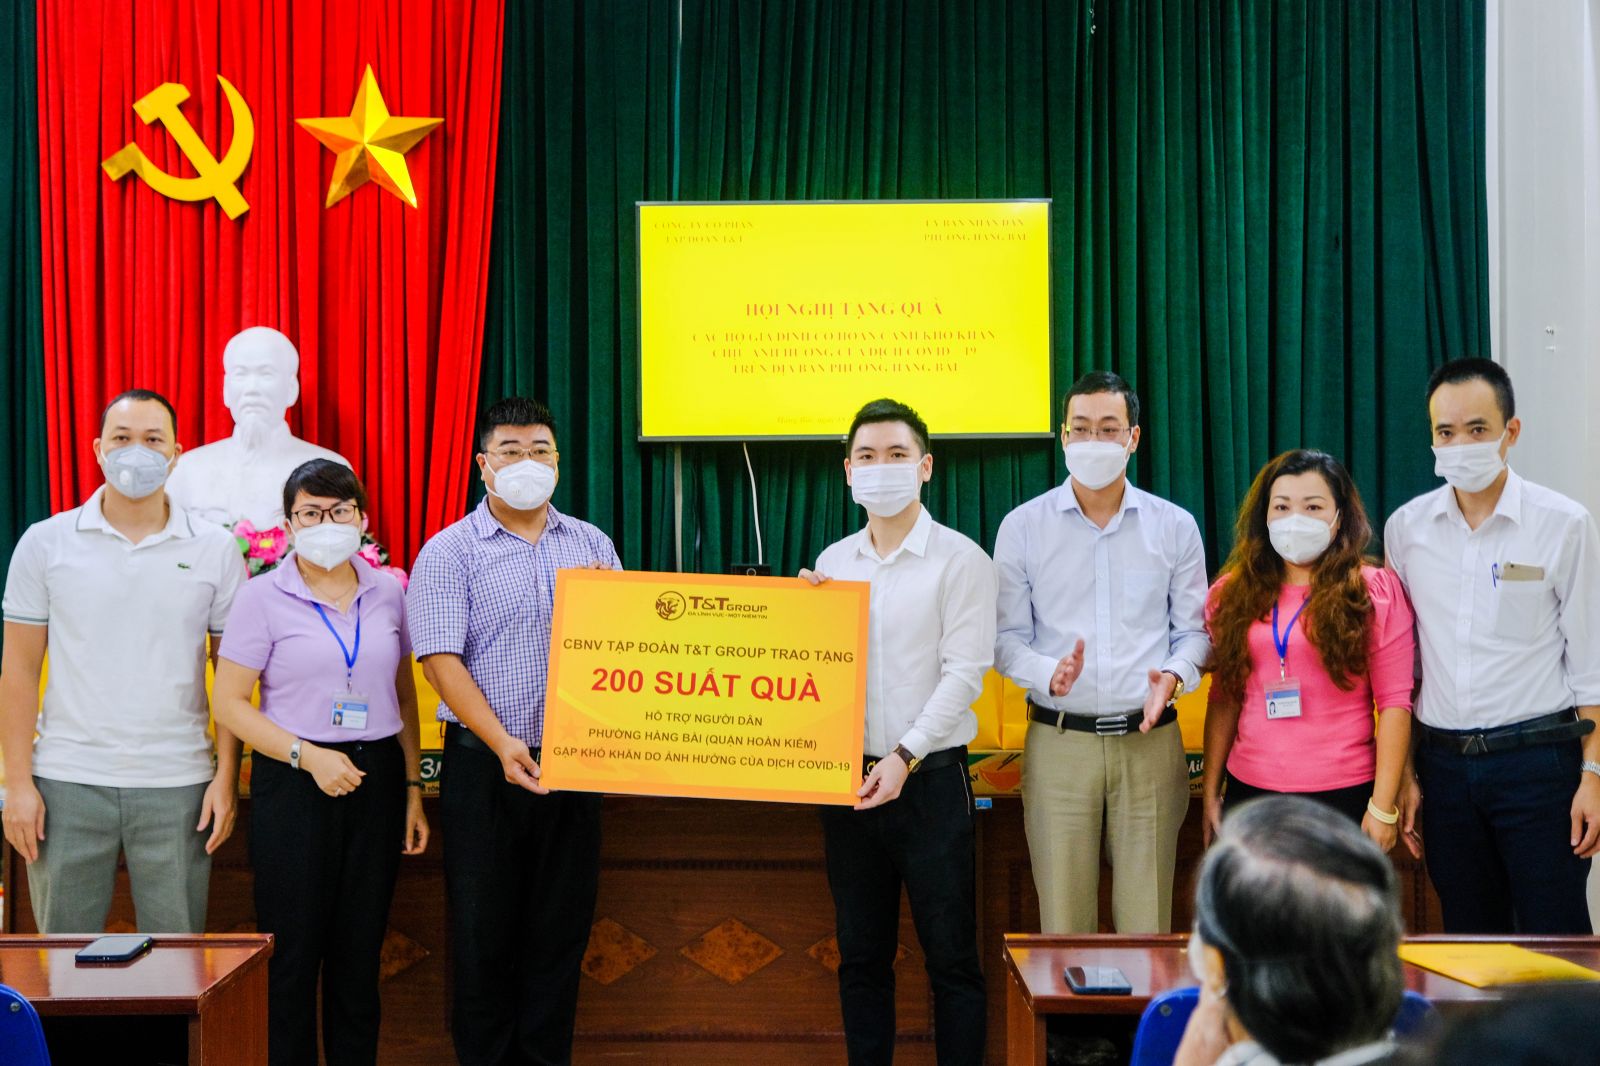 Ông Đỗ Vinh Quang và CBNV T&T Group trao tặng hàng ngàn suất quà tình nghĩa cho người dân Hà Nội gặp khó khăn do ảnh hưởng bởi dịch COVID-19